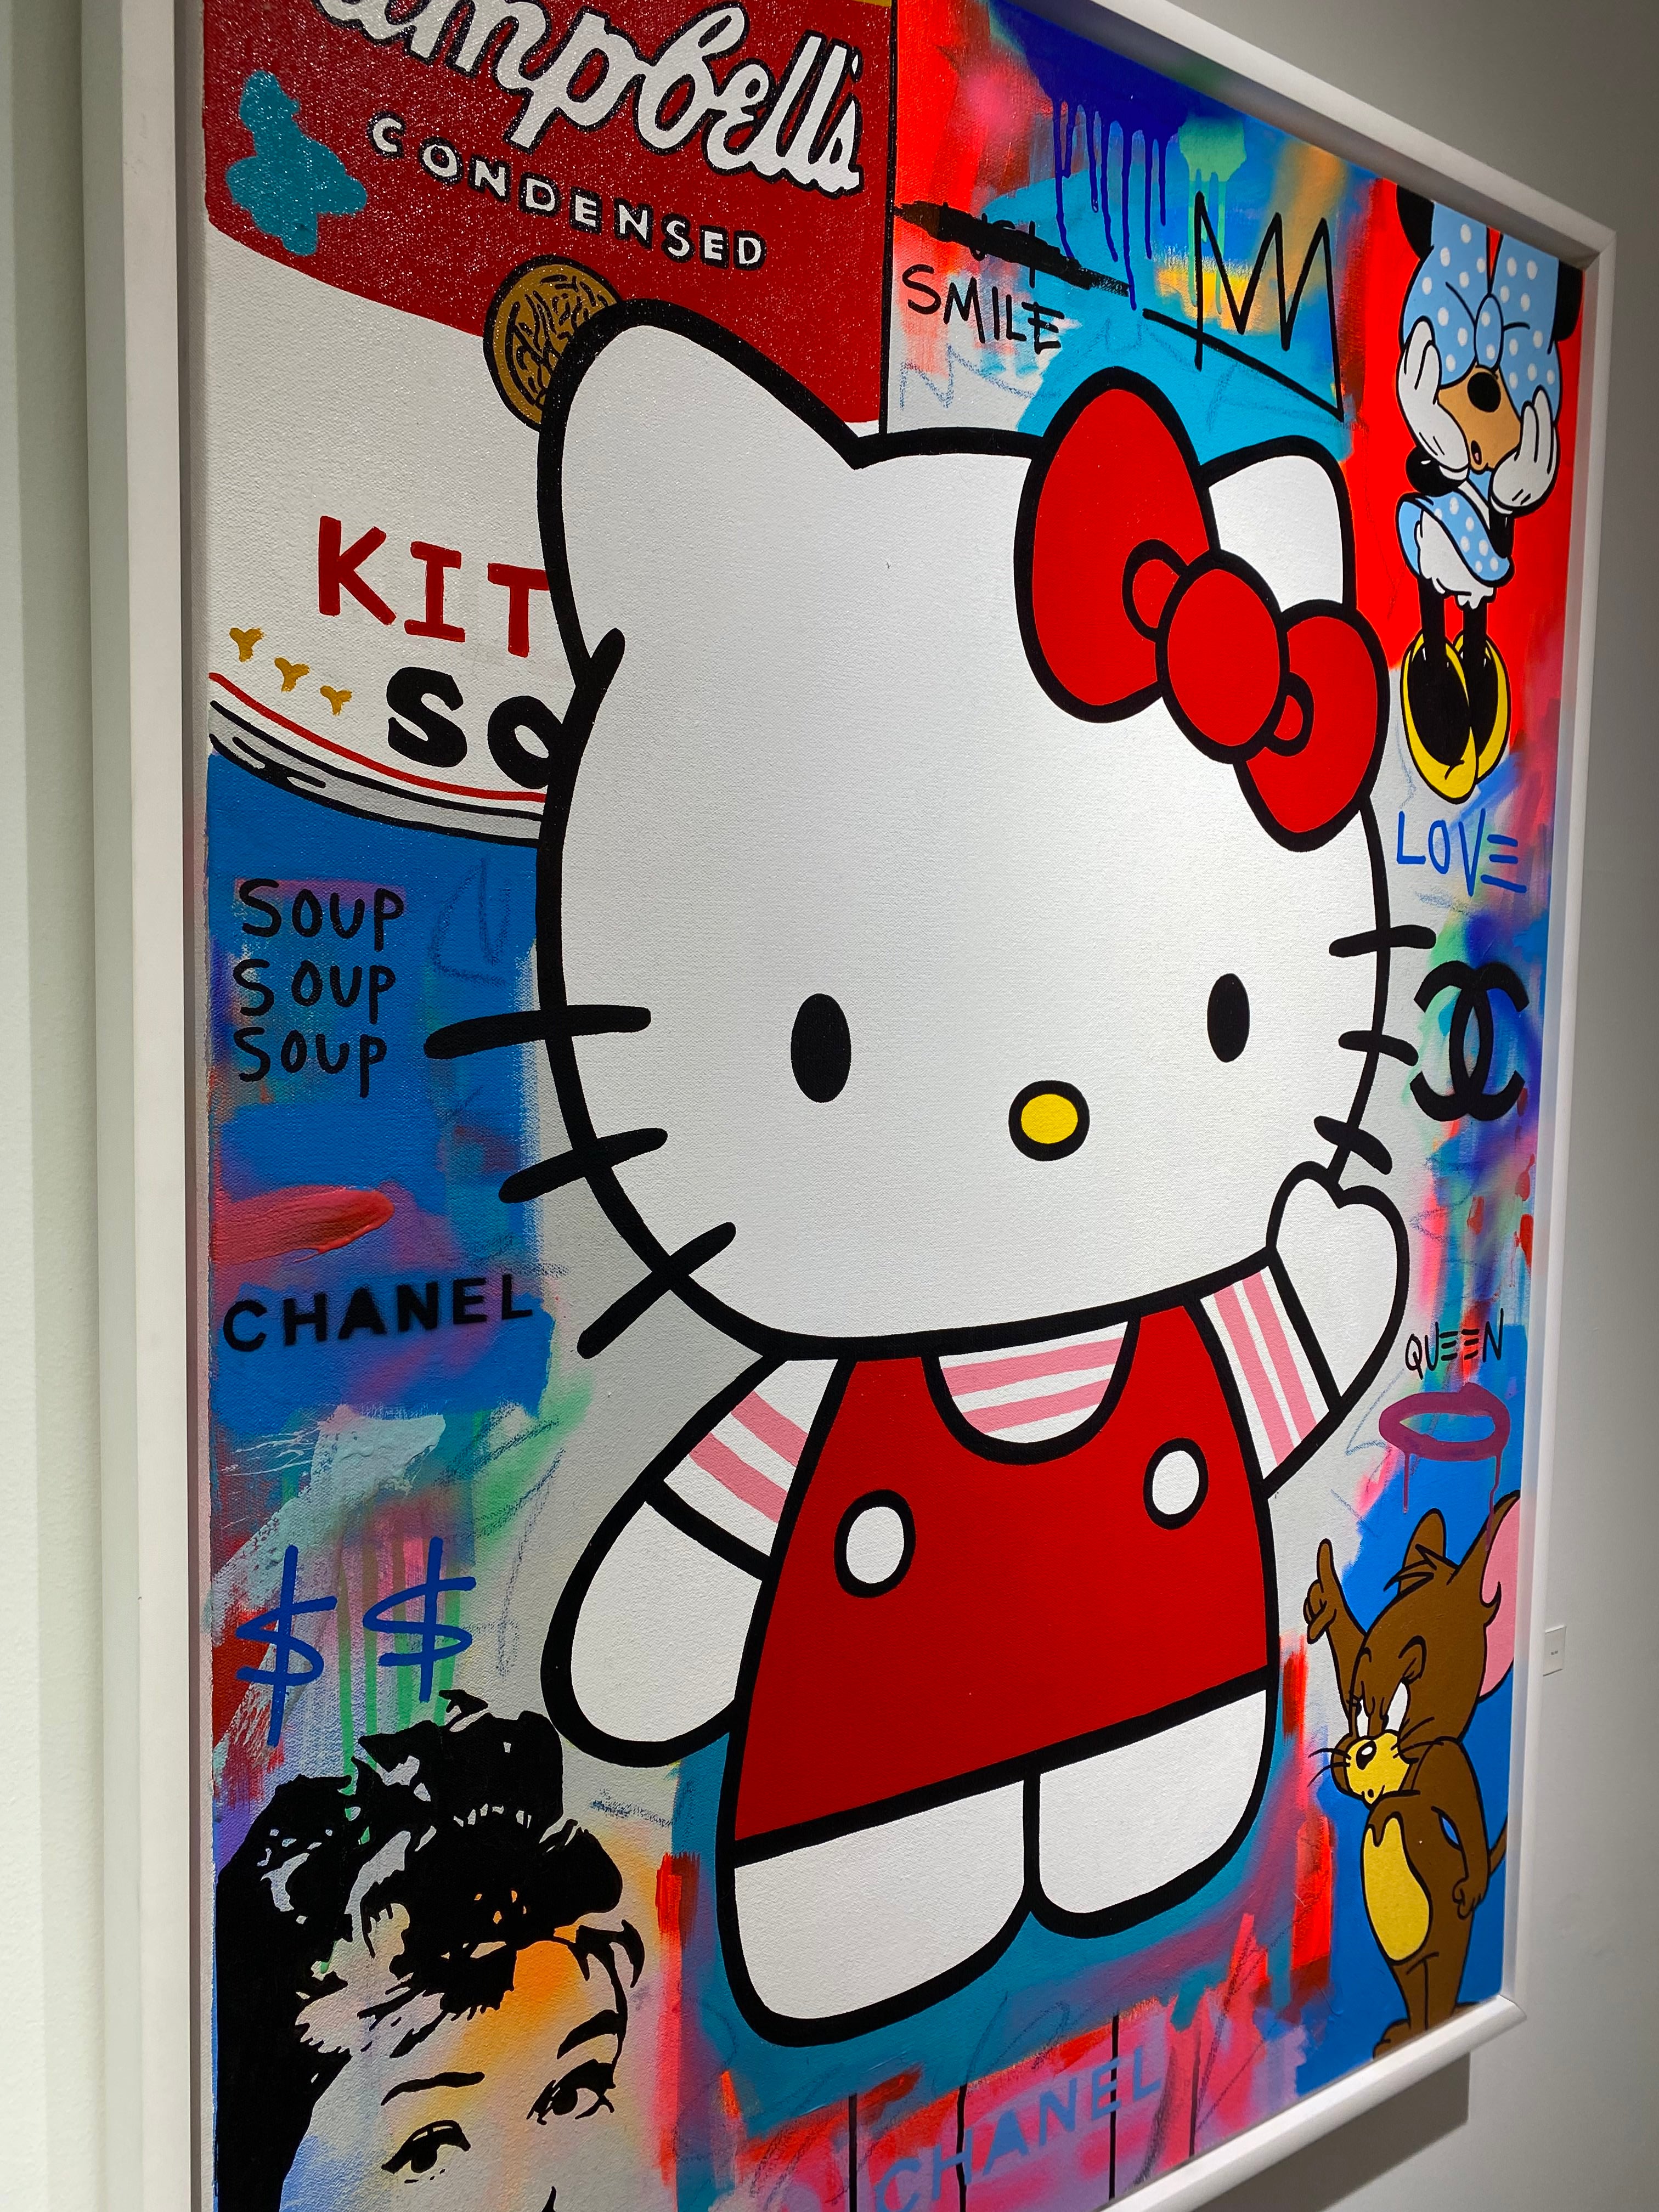 hello kitty design foil｜TikTok Search